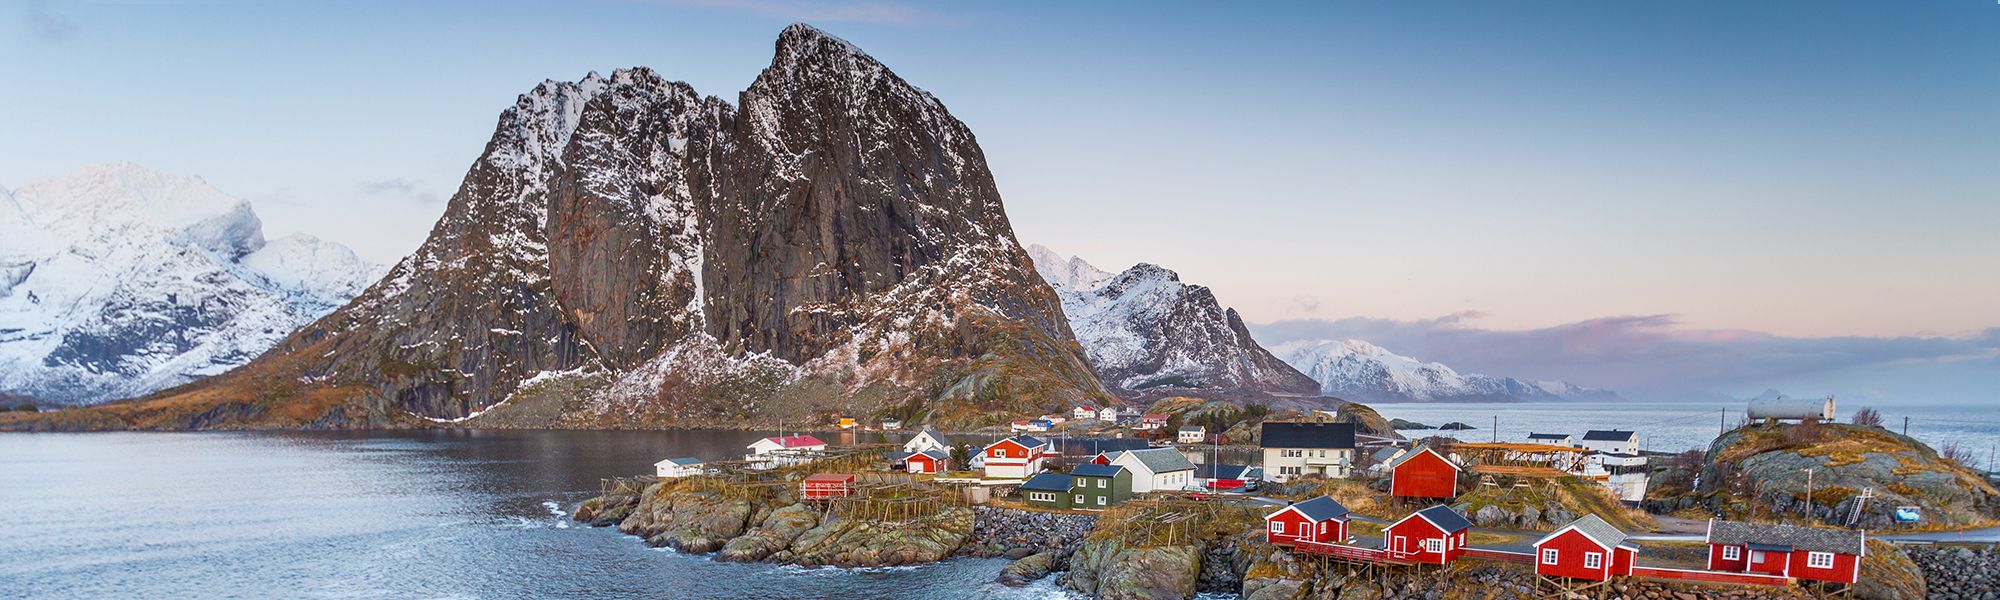 Voyage sur mesure Norvège © Alex Cornu - Visit Norway